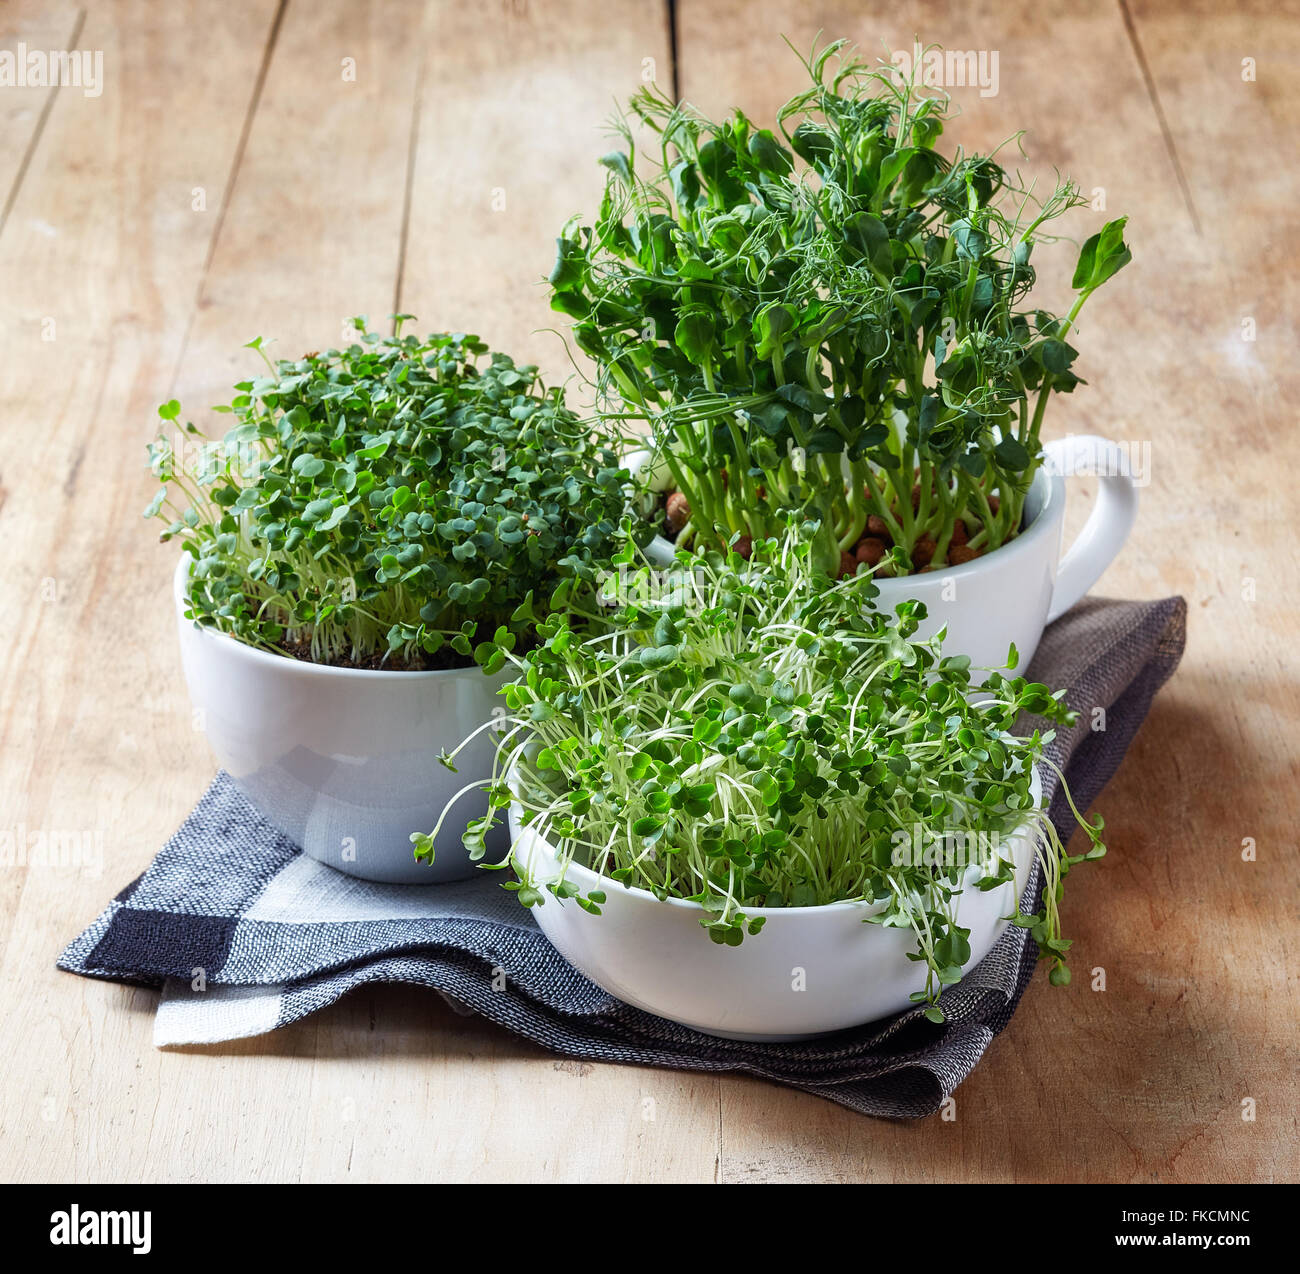 Frische grüne Erbsen, Brokkoli und Rucola Psrout auf Holztisch Stockfoto